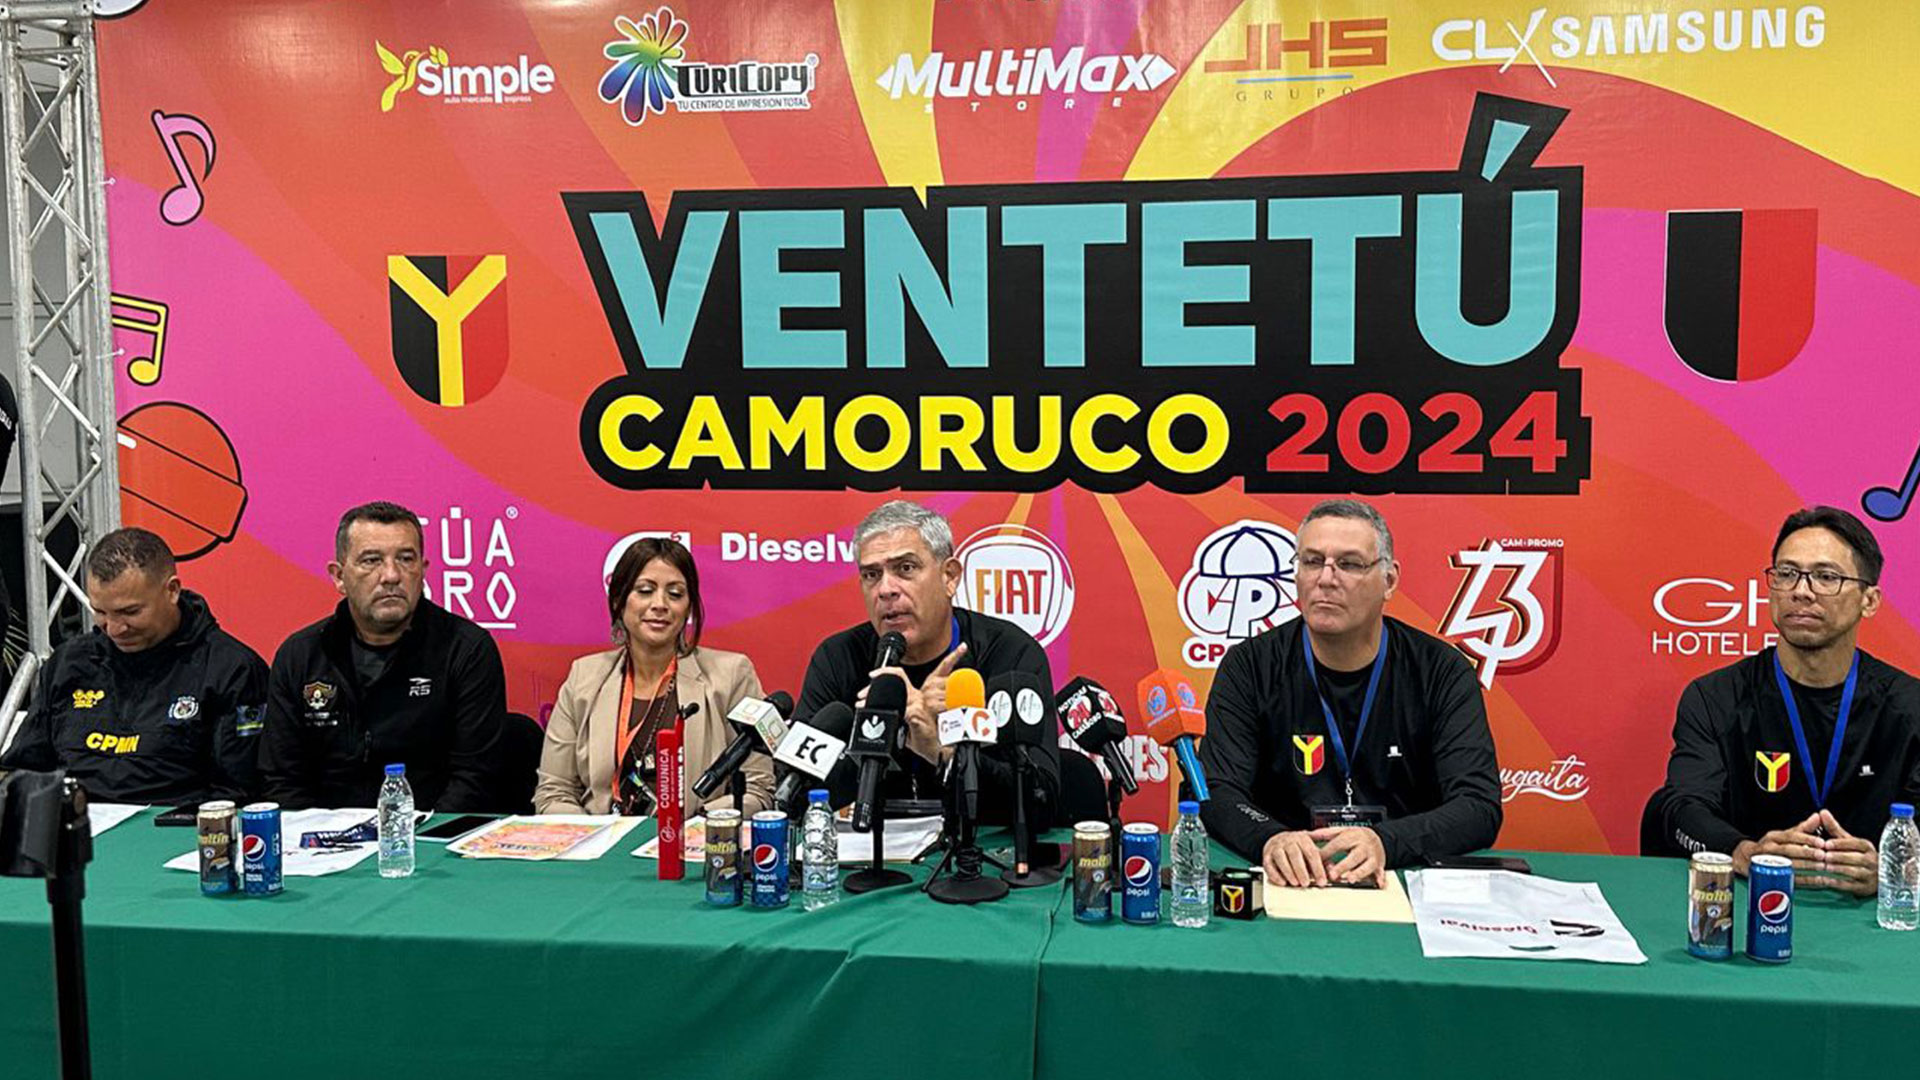 Festival Ventetú Camoruco  - CLX Icons 